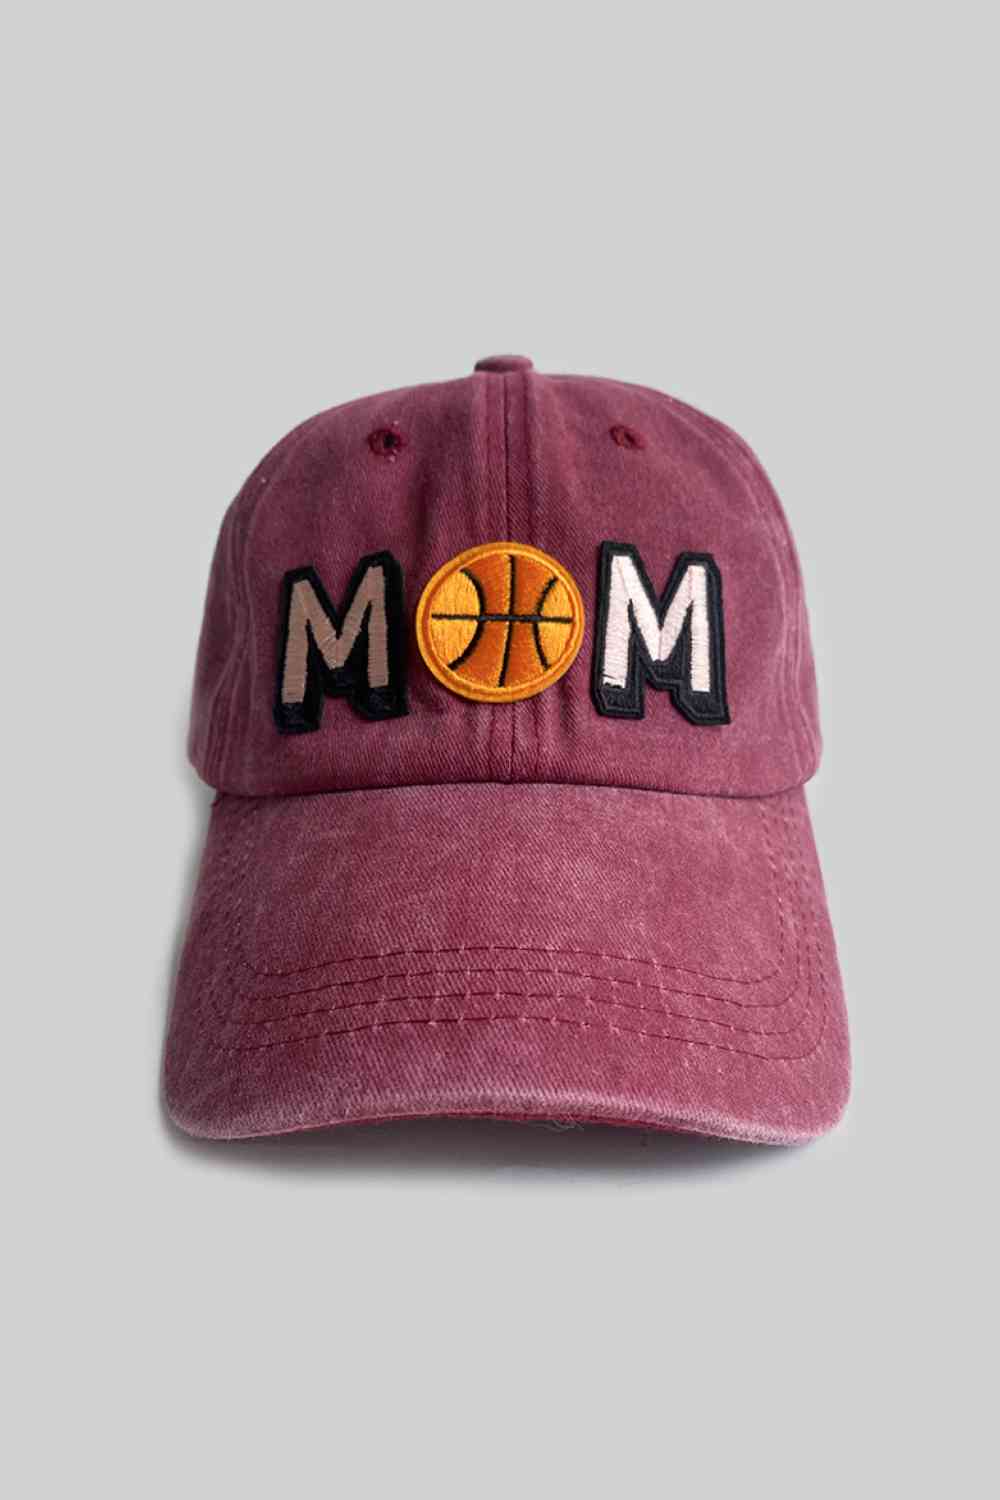 MOM BASKETBALL BASEBALL CAP - MULTIPLE COLORS